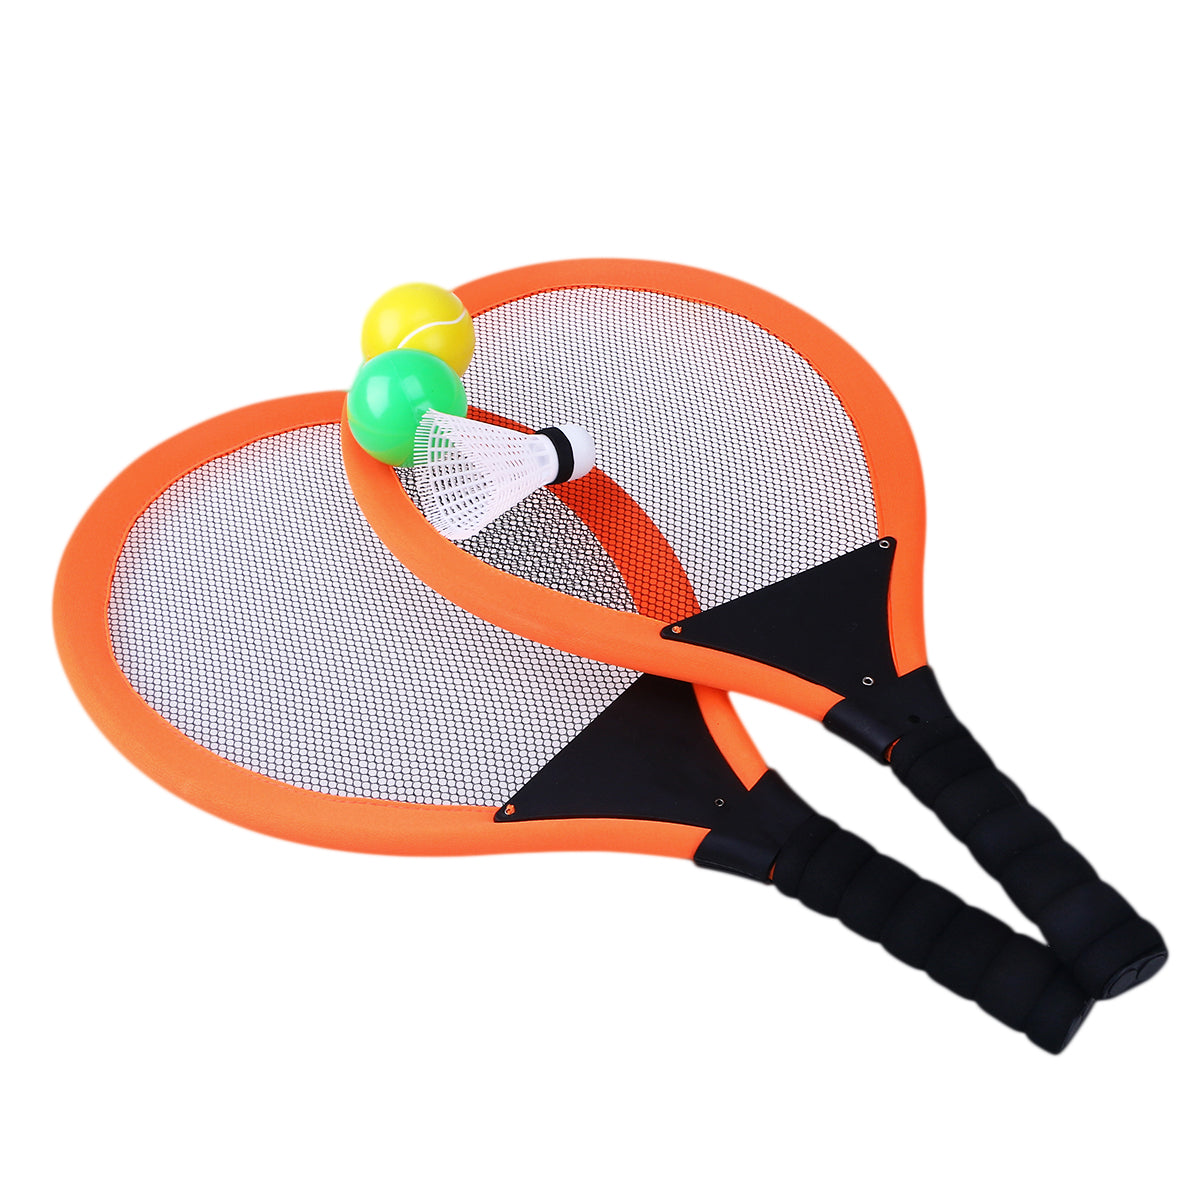 Children's badminton racket